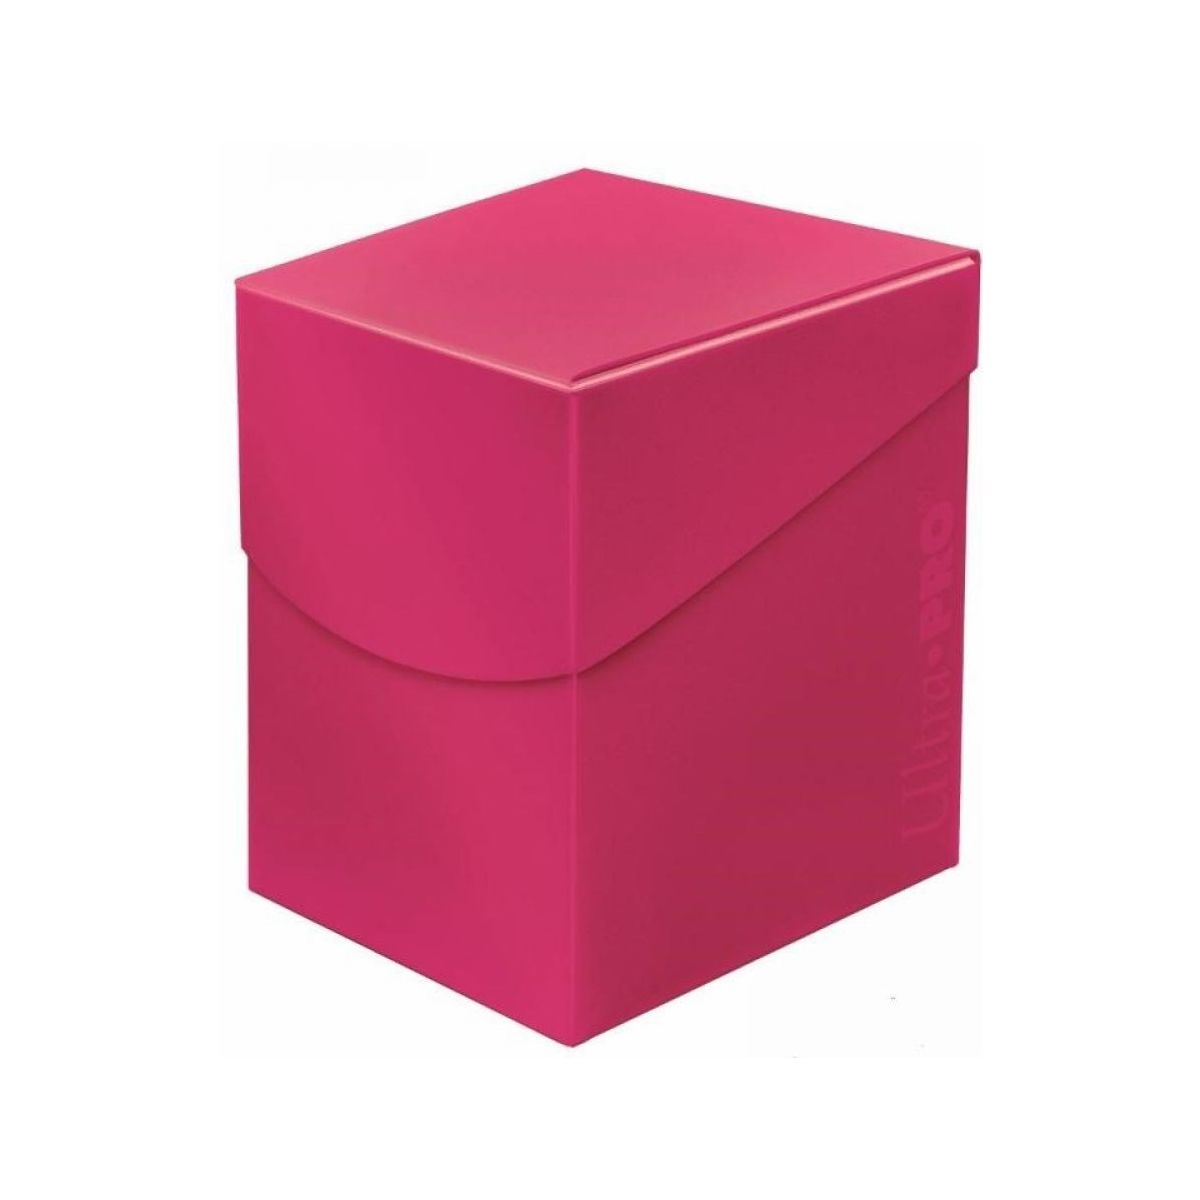 Deckbox - Eclipse PRO 100+ Hot Pink